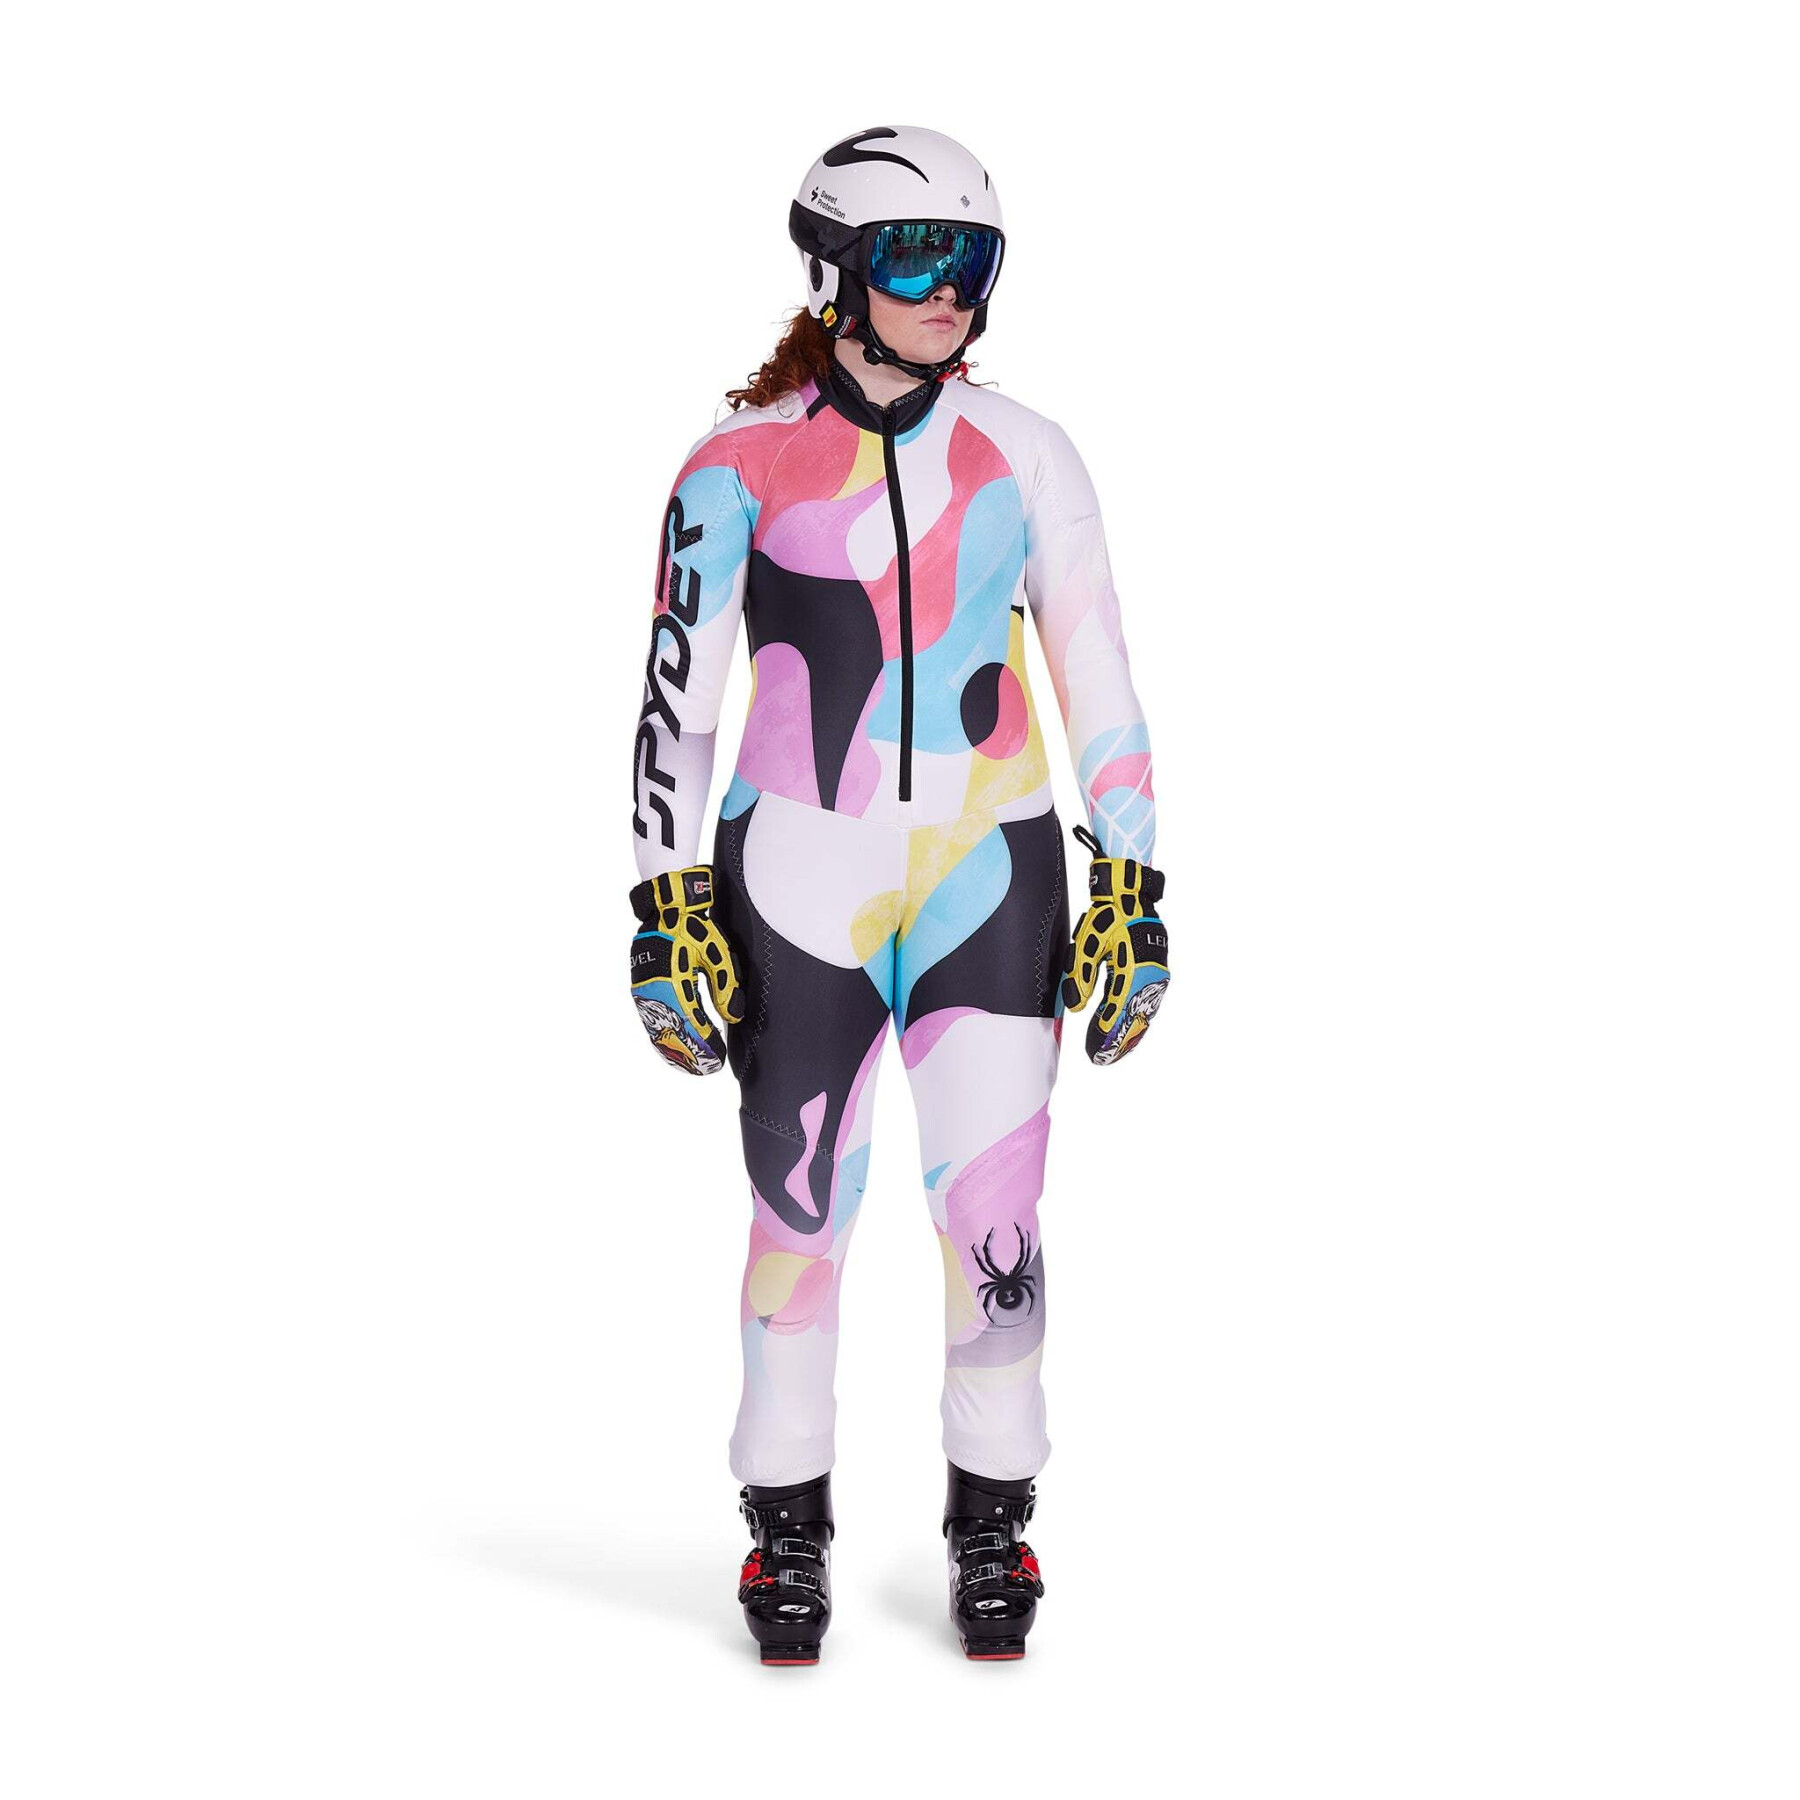 Mono de esquí para mujer Spyder GS Race